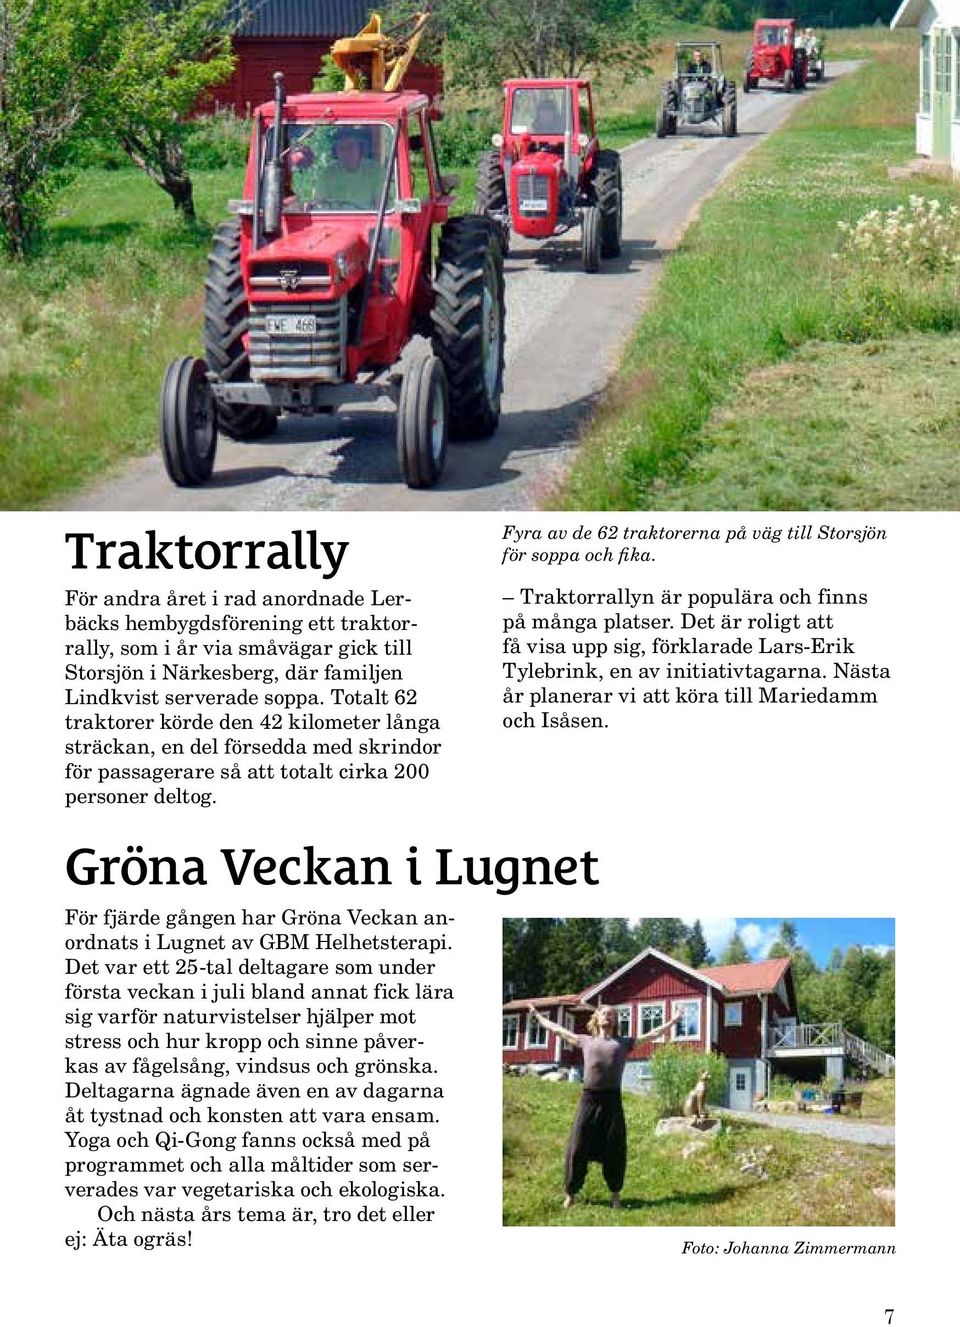 Fyra av de 62 traktorerna på väg till Storsjön för soppa och fika. Traktorrallyn är populära och finns på många platser.